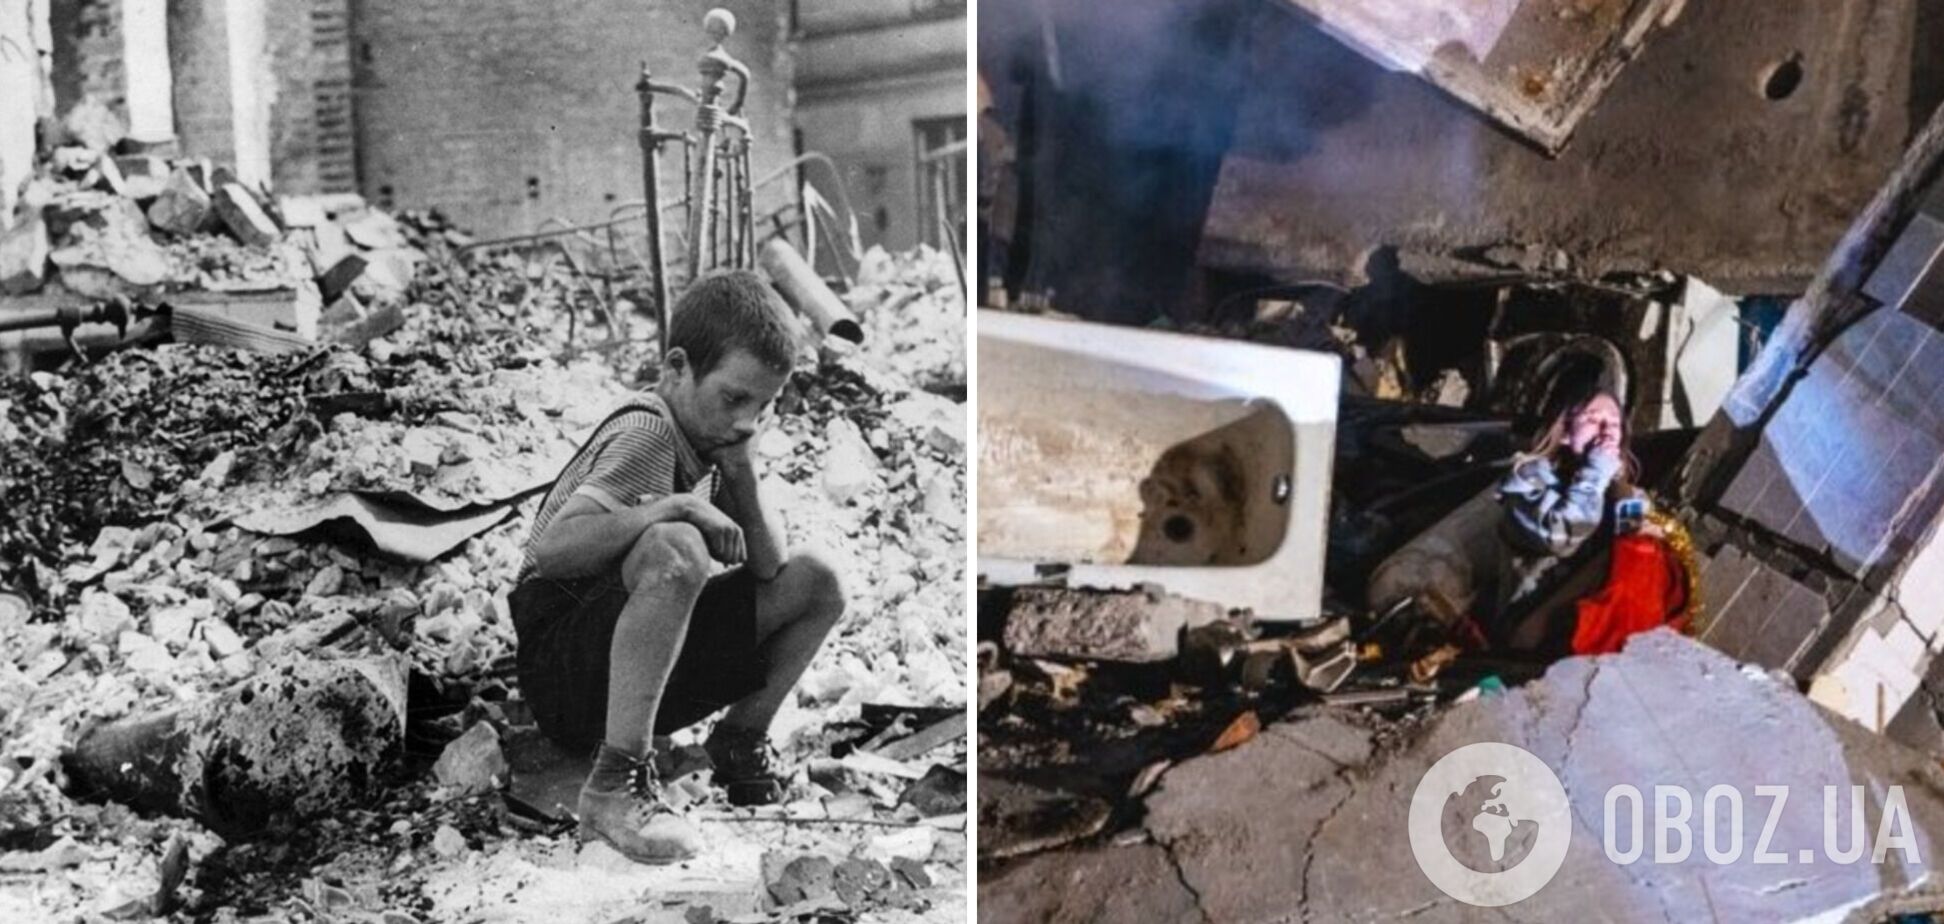 'История повторяется': в сети сравнили снимок из Варшавы во время Второй мировой и фото из разбомбленной квартиры в Днепре